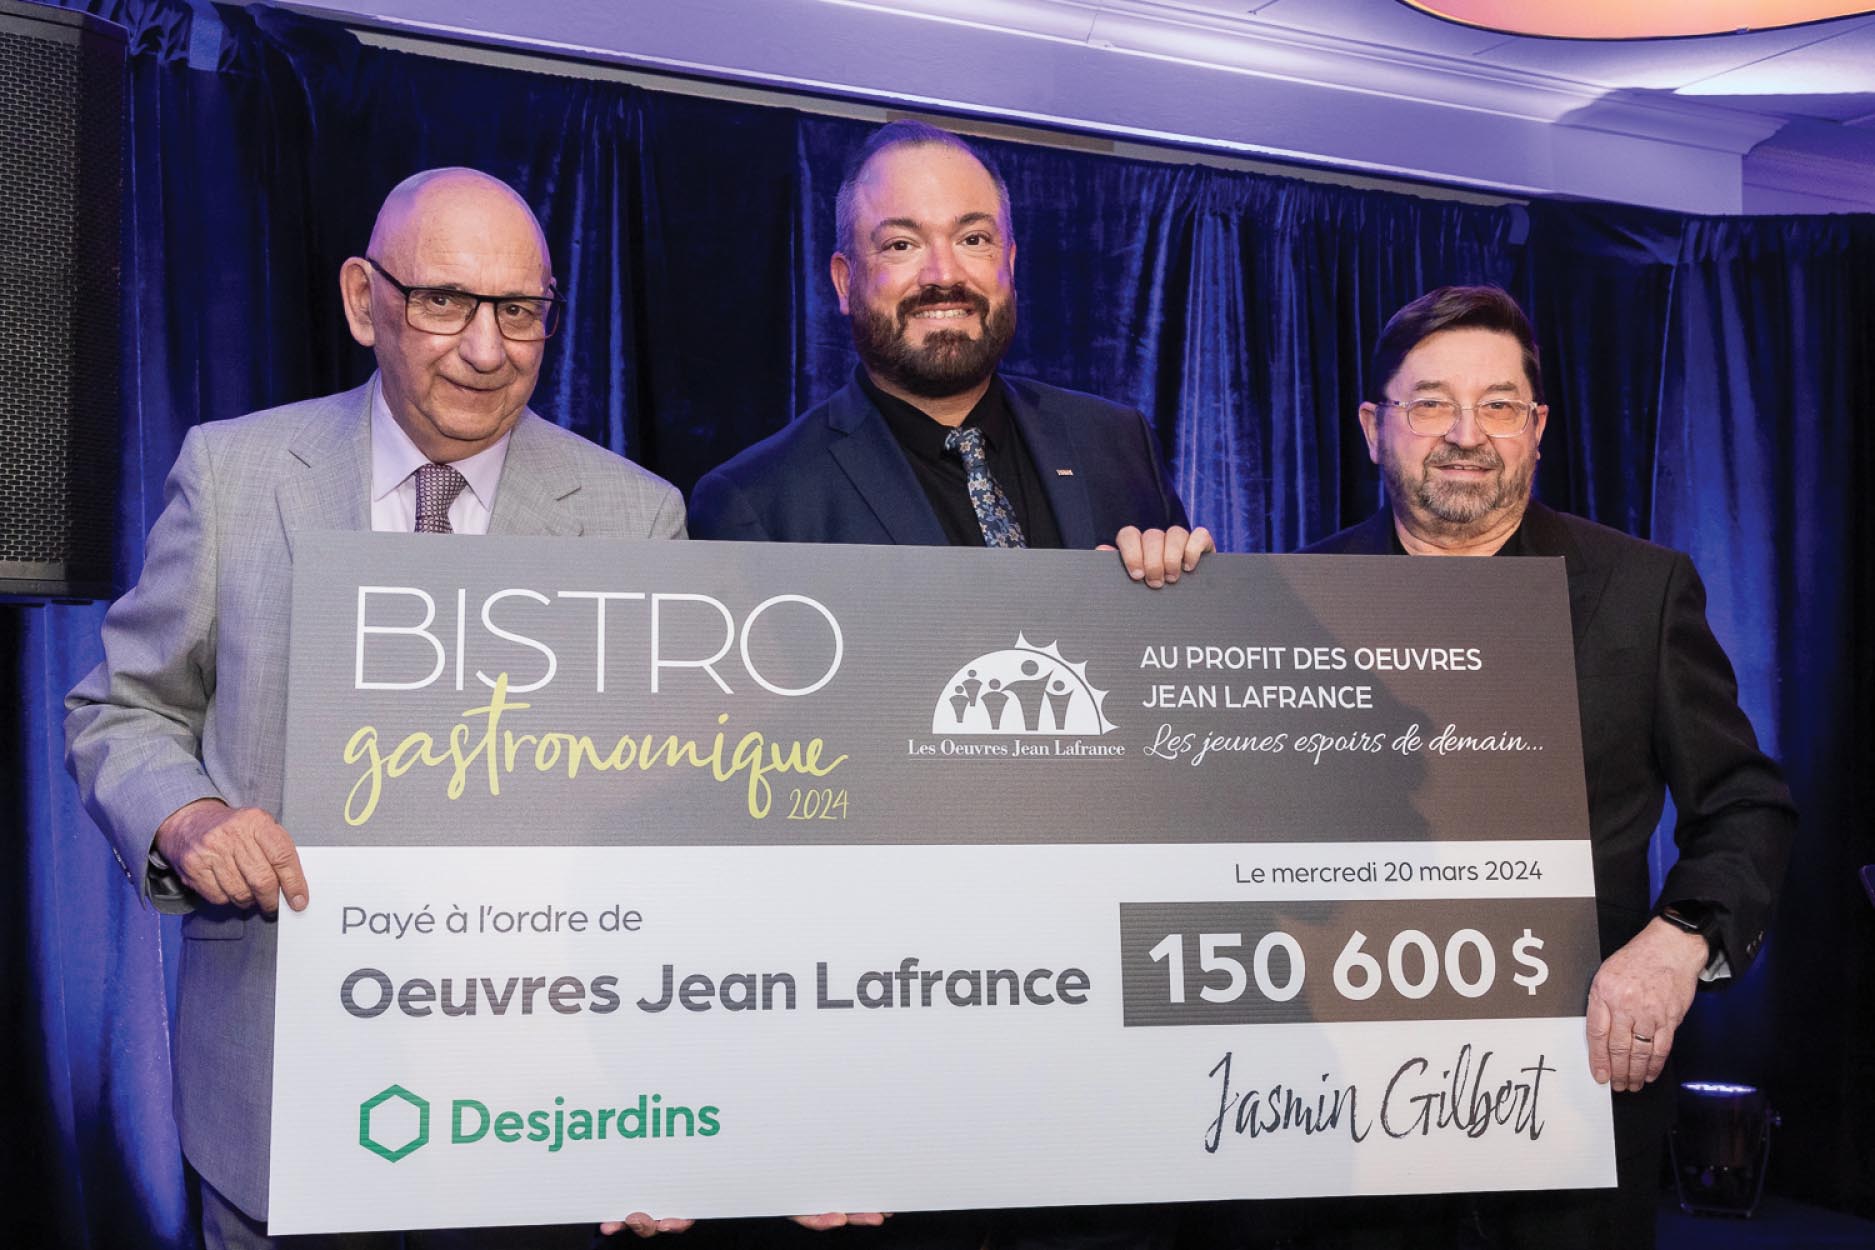 Les causes de Prestige – Un franc succès pour la 21e édition du Bistro Gastronomique aux profits des oeuvres Jean Lafrance